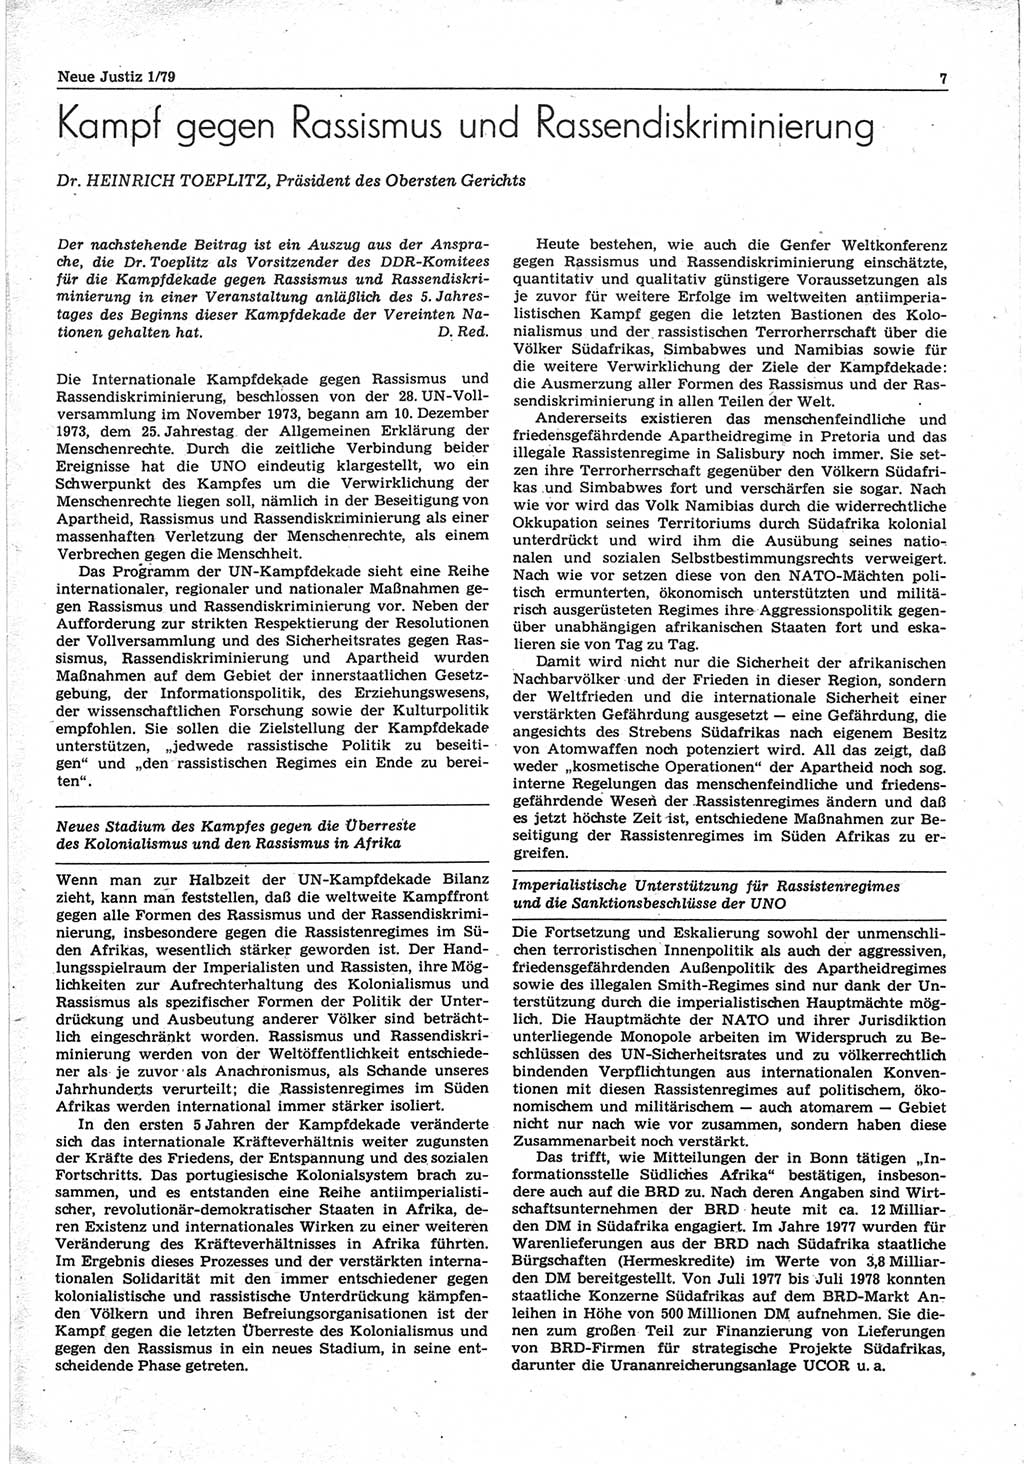 Neue Justiz (NJ), Zeitschrift für sozialistisches Recht und Gesetzlichkeit [Deutsche Demokratische Republik (DDR)], 33. Jahrgang 1979, Seite 7 (NJ DDR 1979, S. 7)